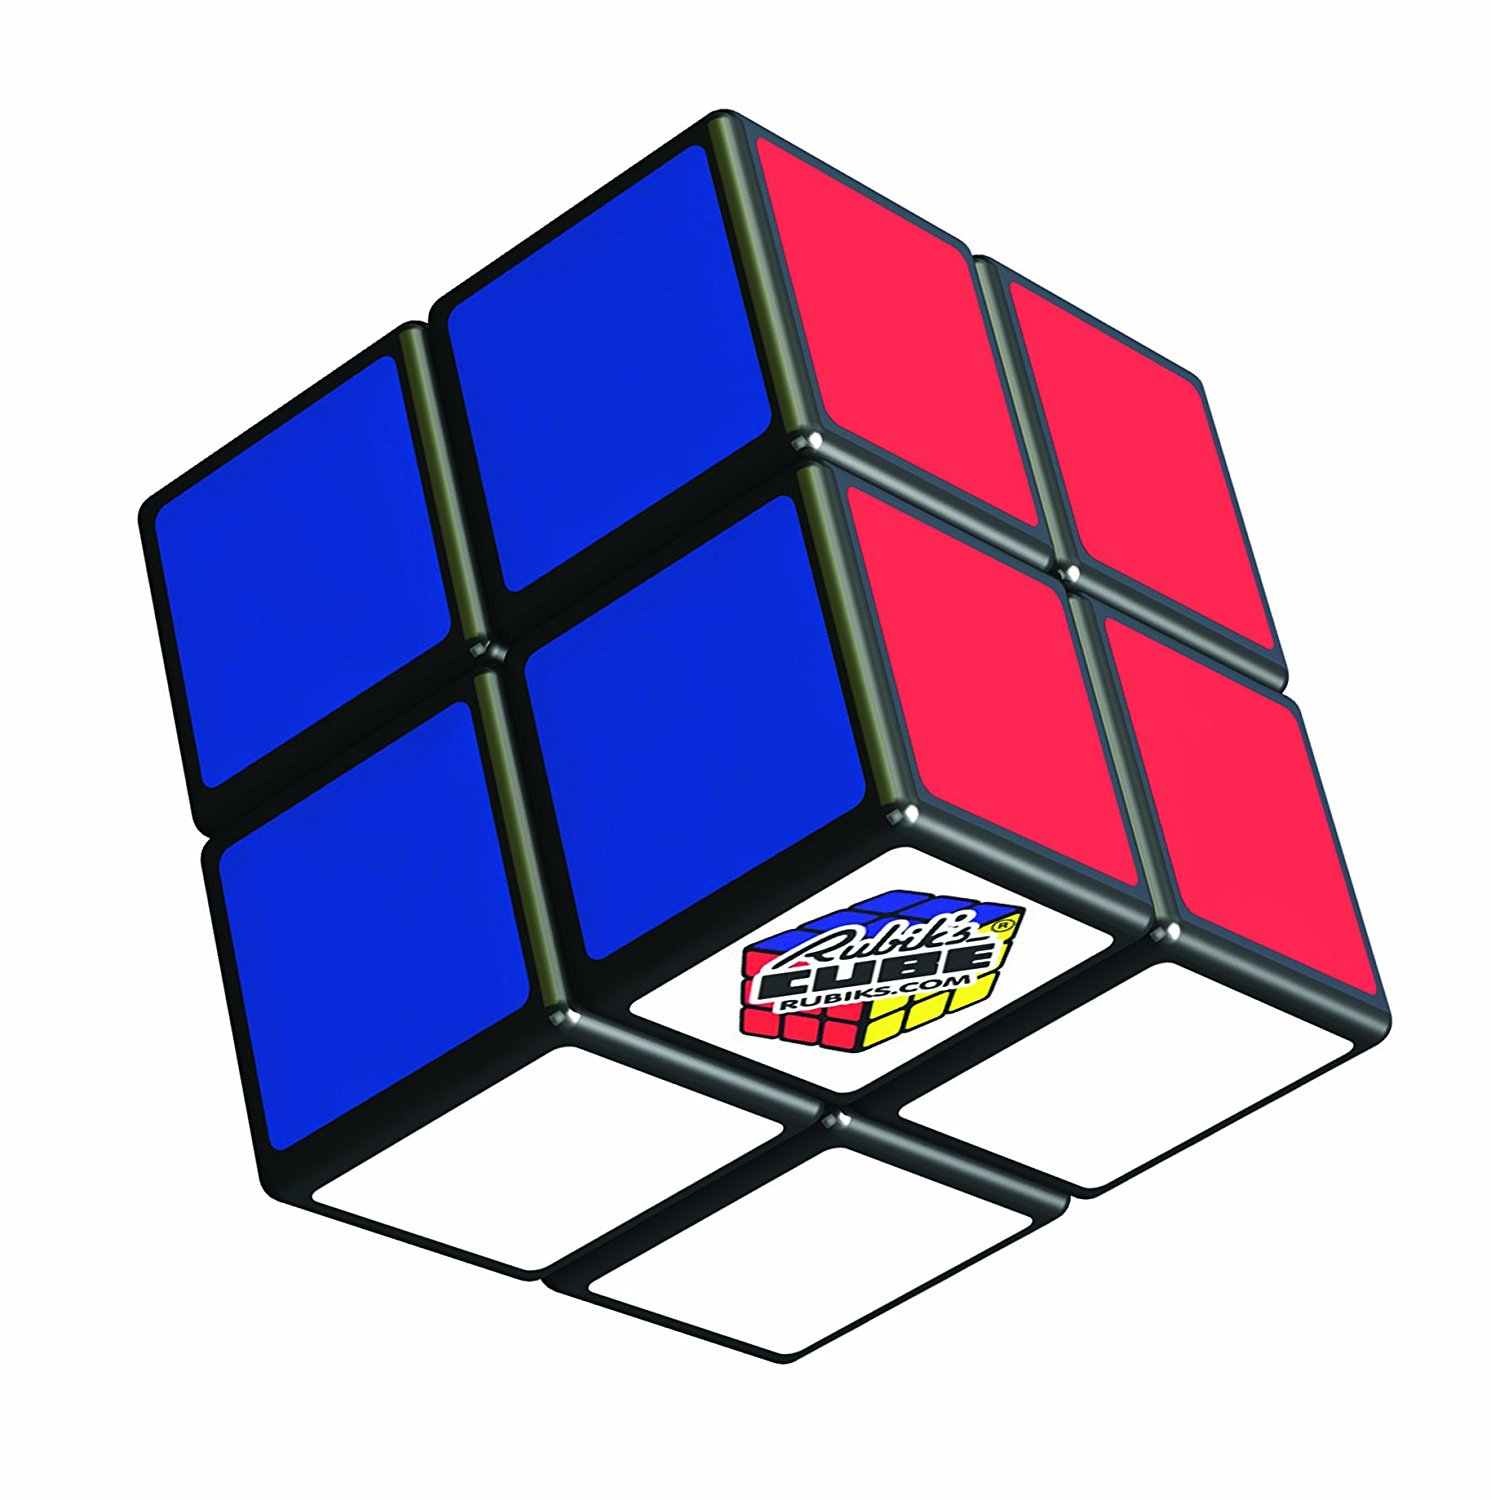 John Adams Rubik's Cube 2 x 2-Inch 